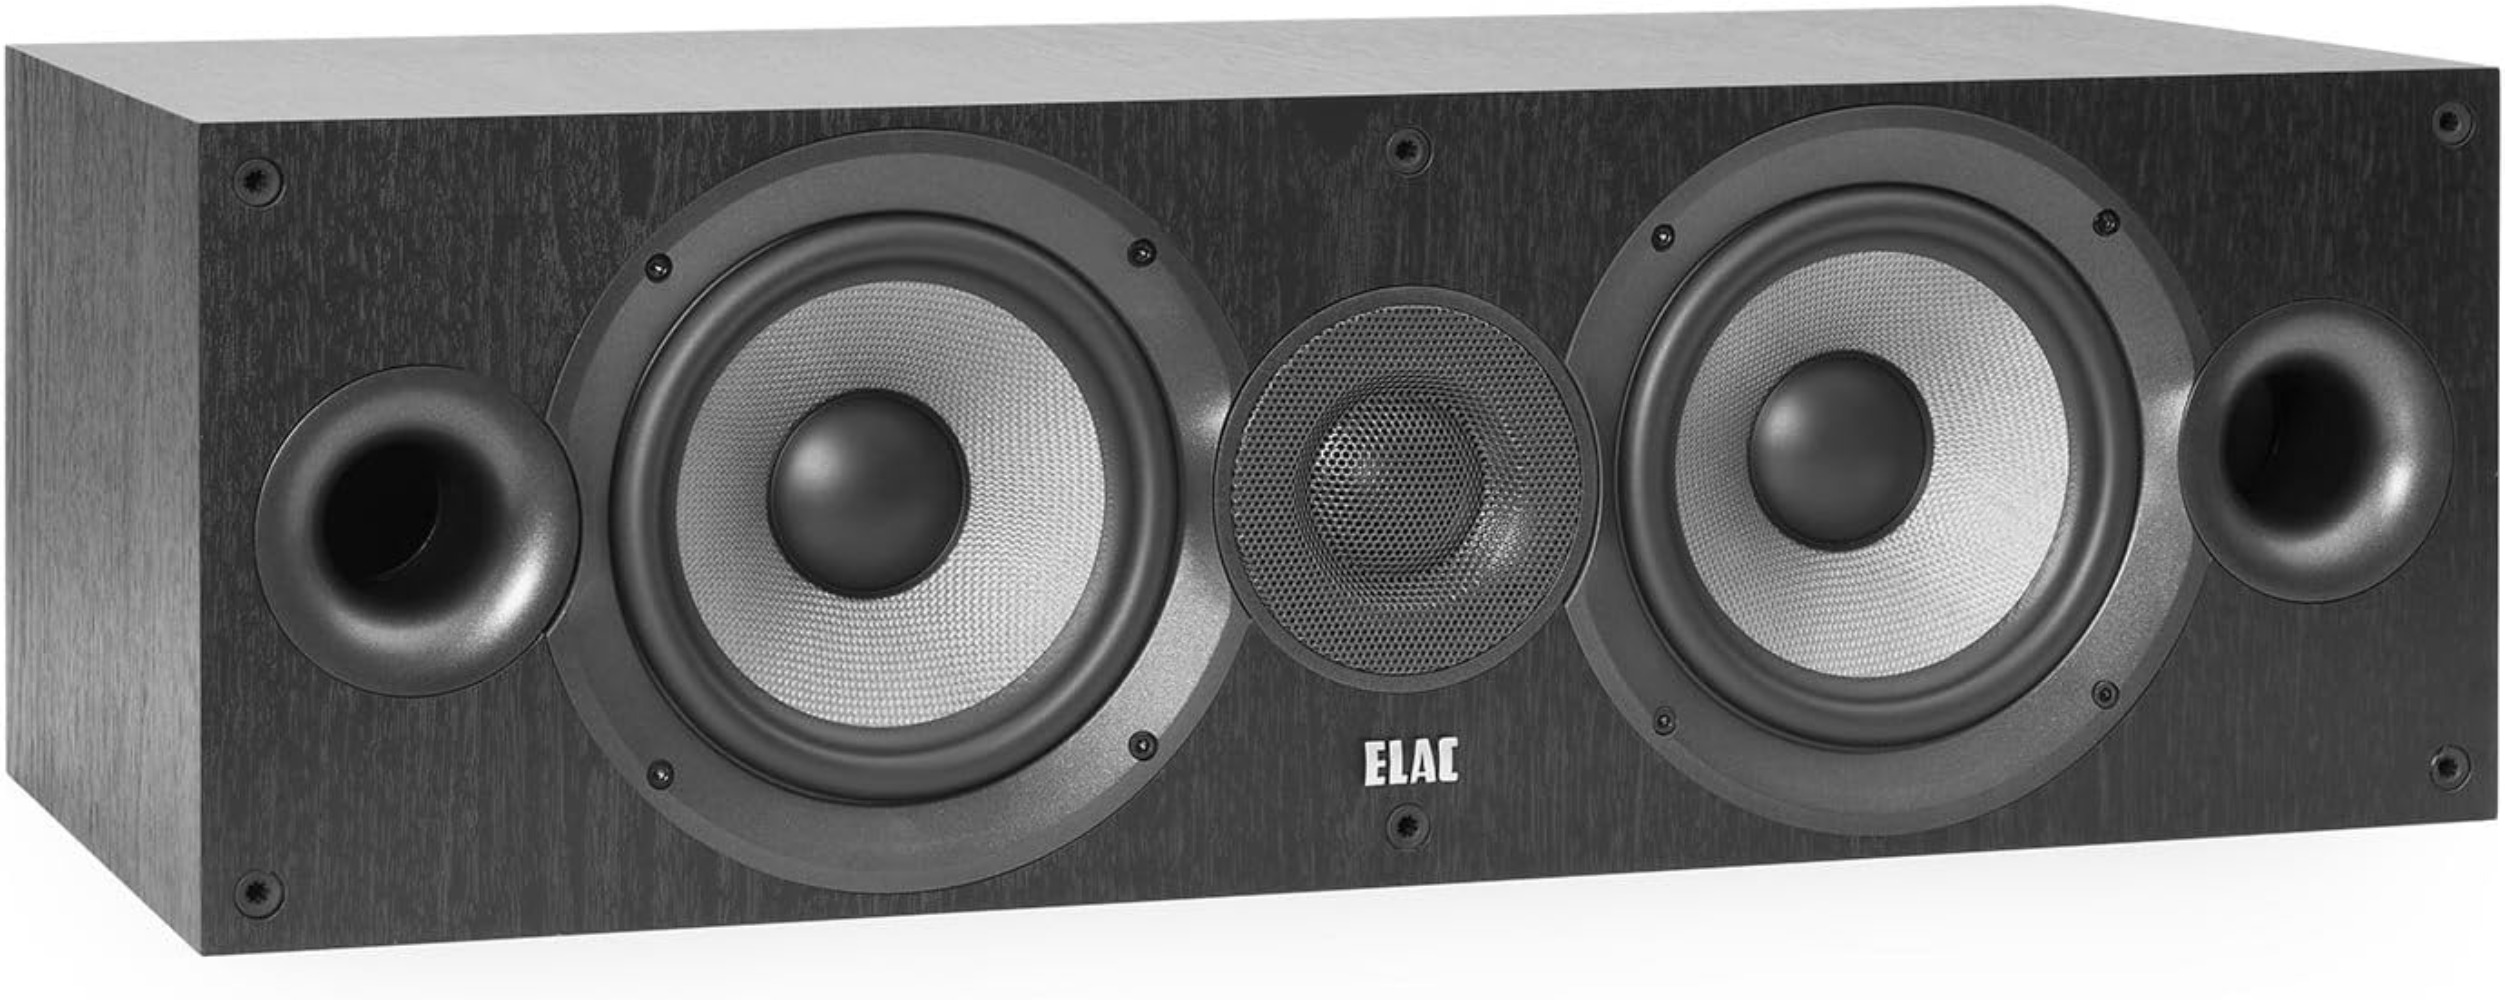 ELAC - Debut 2.0 6.5" Center Speaker with MDF Cabinets, Black 